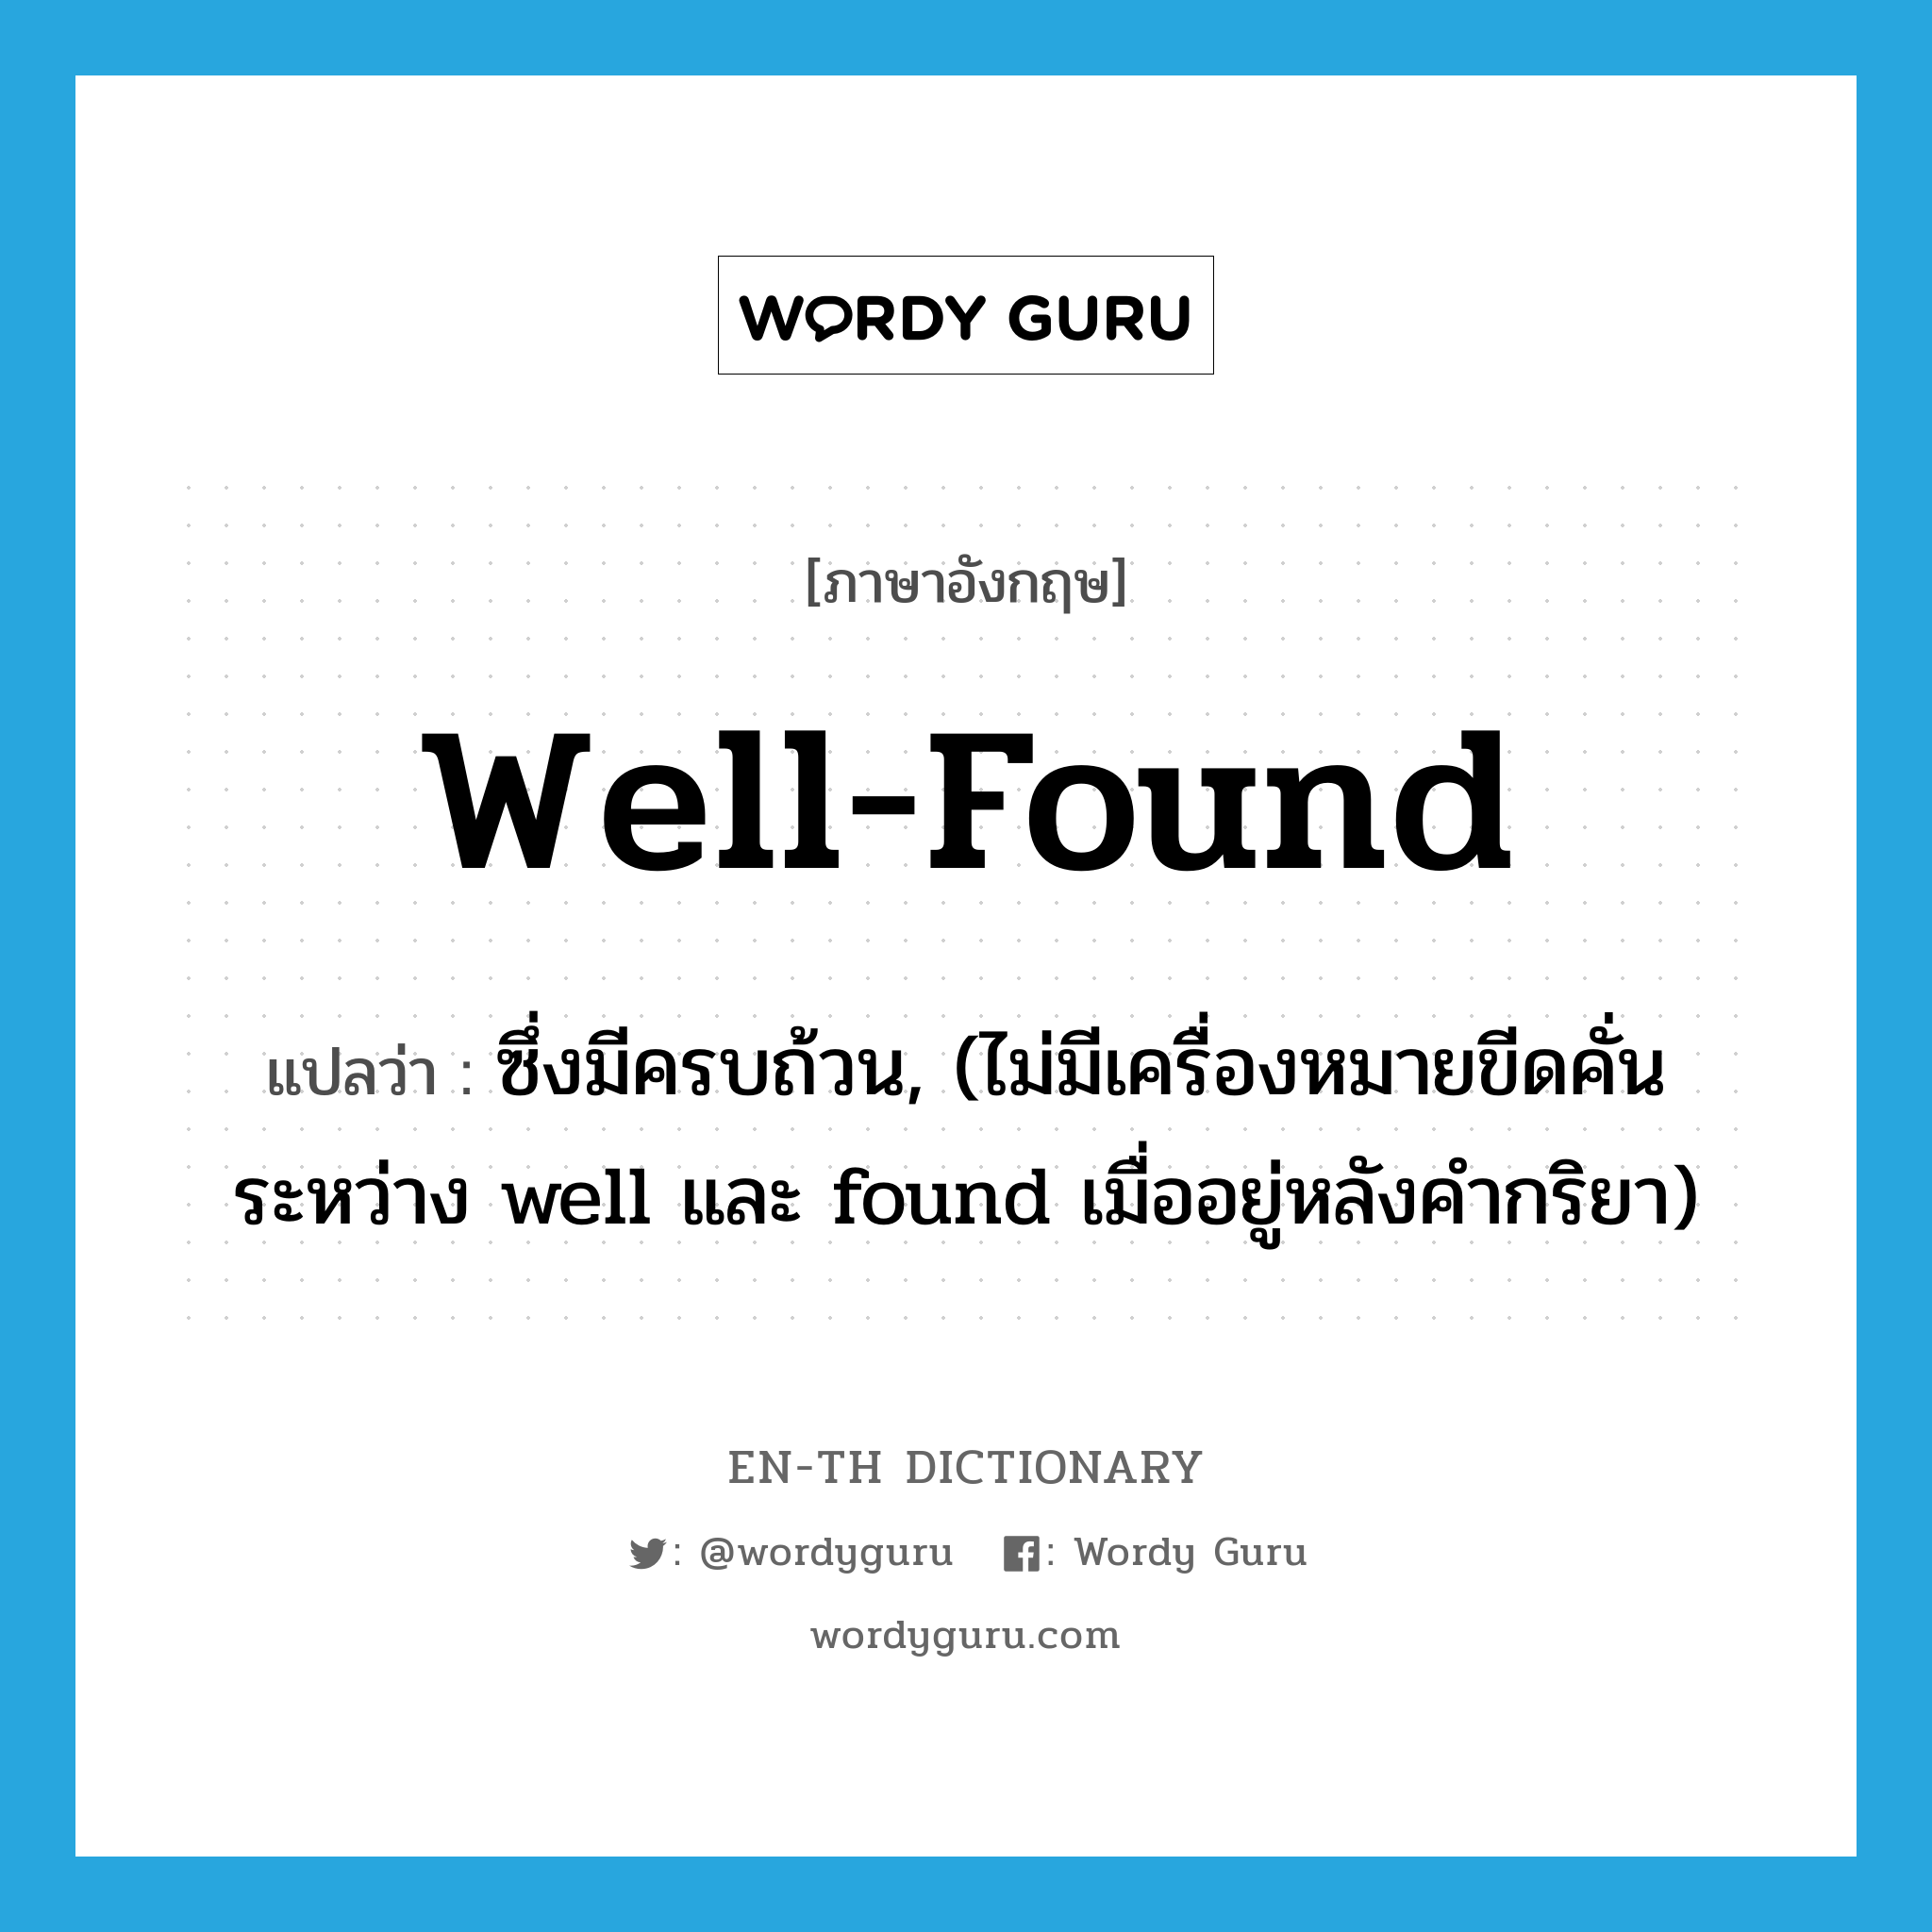 well-found แปลว่า?, คำศัพท์ภาษาอังกฤษ well-found แปลว่า ซึ่งมีครบถ้วน, (ไม่มีเครื่องหมายขีดคั่นระหว่าง well และ found เมื่ออยู่หลังคำกริยา) ประเภท ADJ หมวด ADJ